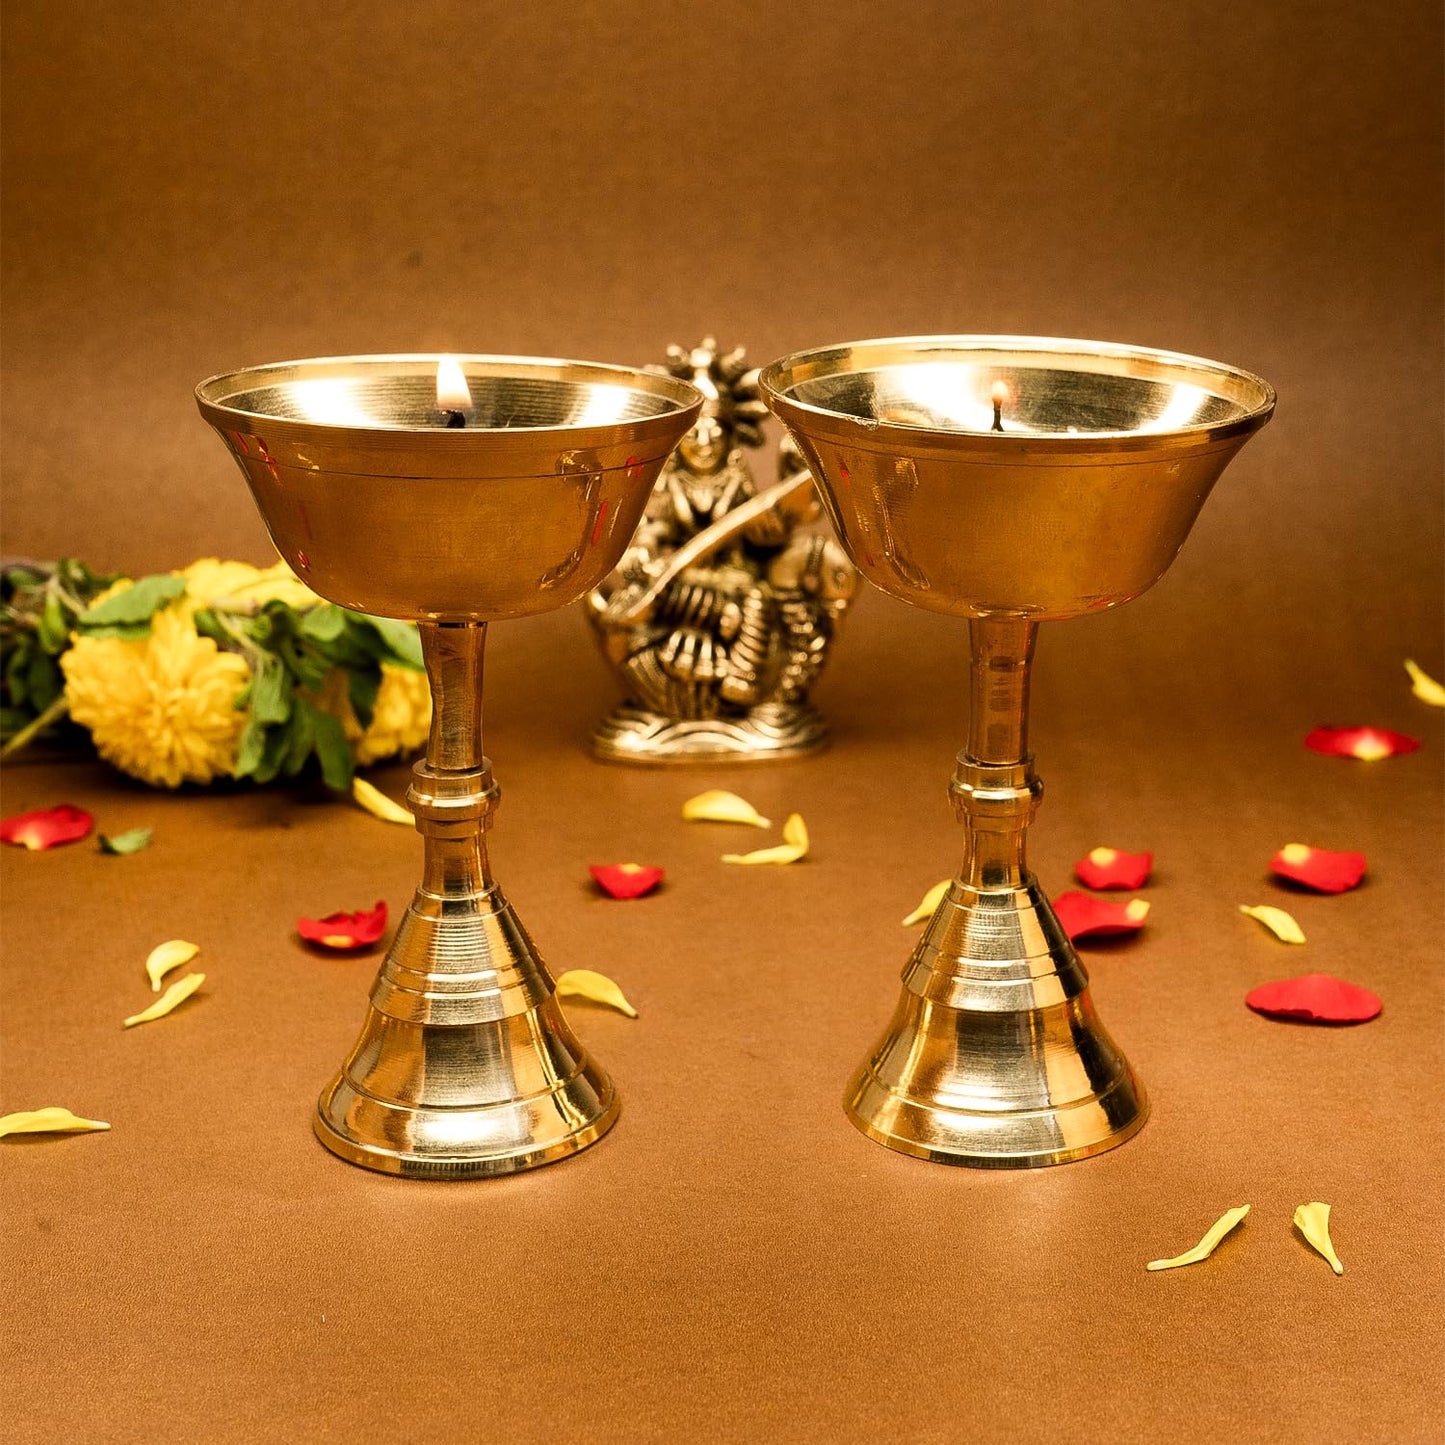 Ekhasa 100% Pure Brass Heavy Udupi Nanda Table Diya for Puja | Akhand Jyothi Deepam Kundulu for Pooja | Brass Vilakku Diyas for Pooja | Dipak Diva Deepas for Pooja | Tall Deep Pyali Stand (Set of 2)